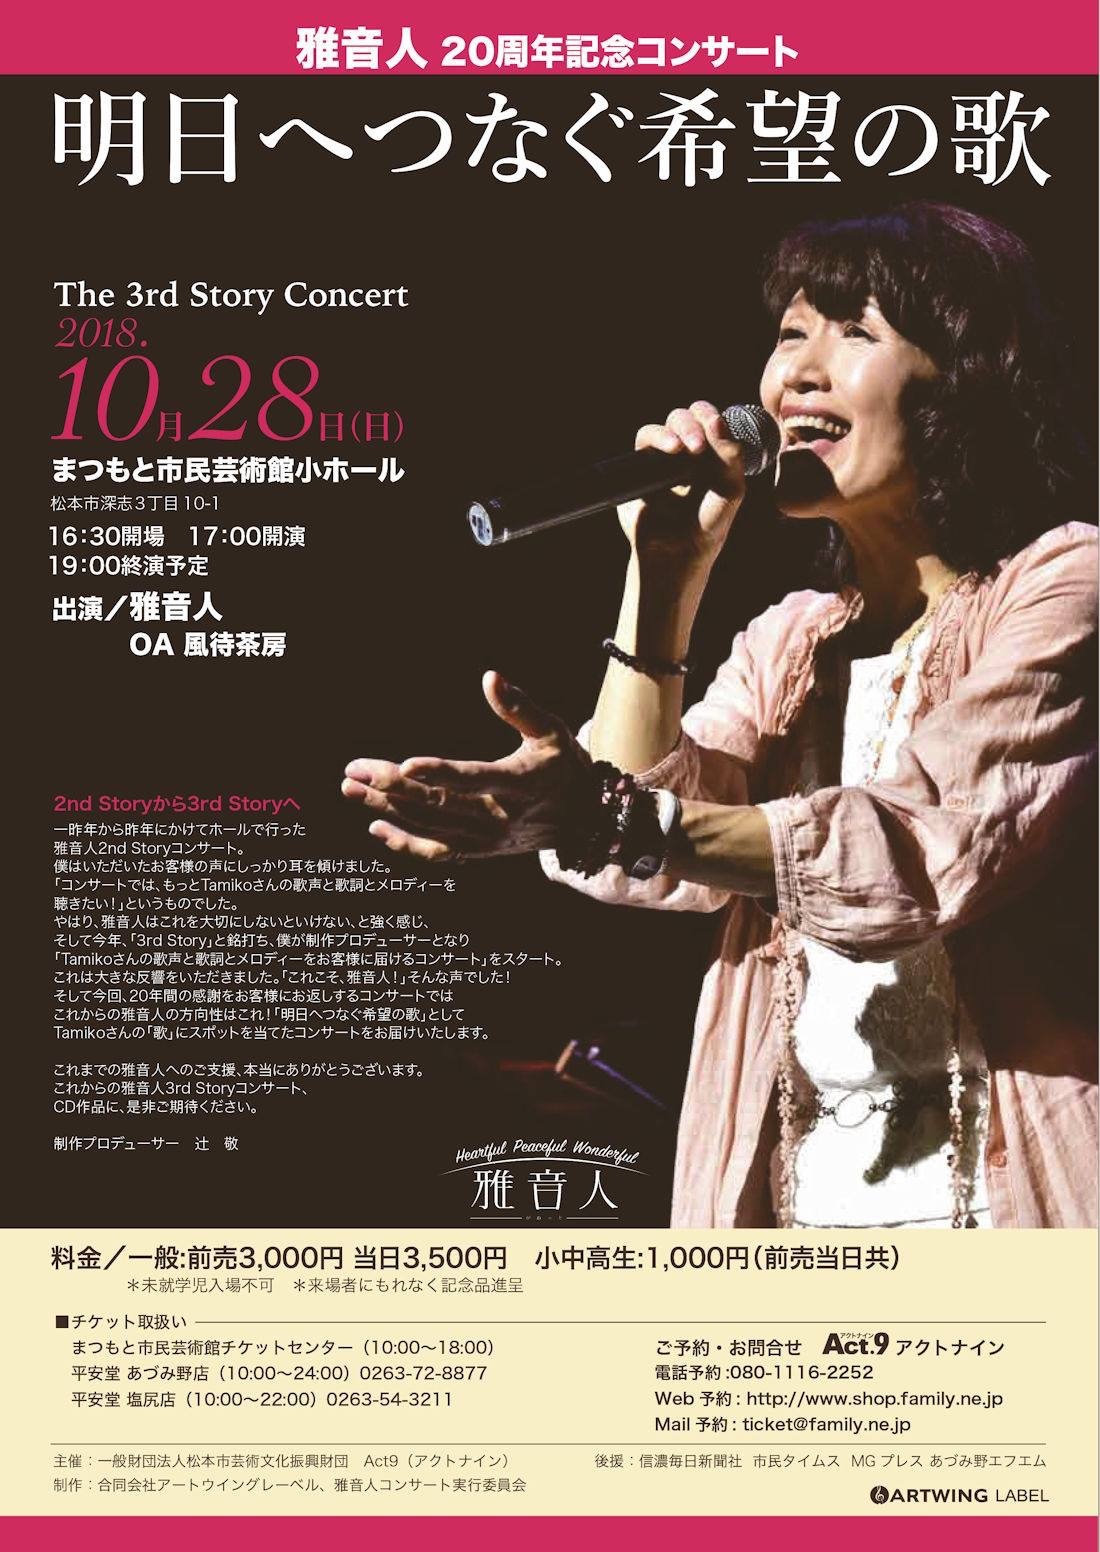 雅音人20周年コンサート「明日へつなぐ希望の歌」報告_d0063599_18453039.jpeg